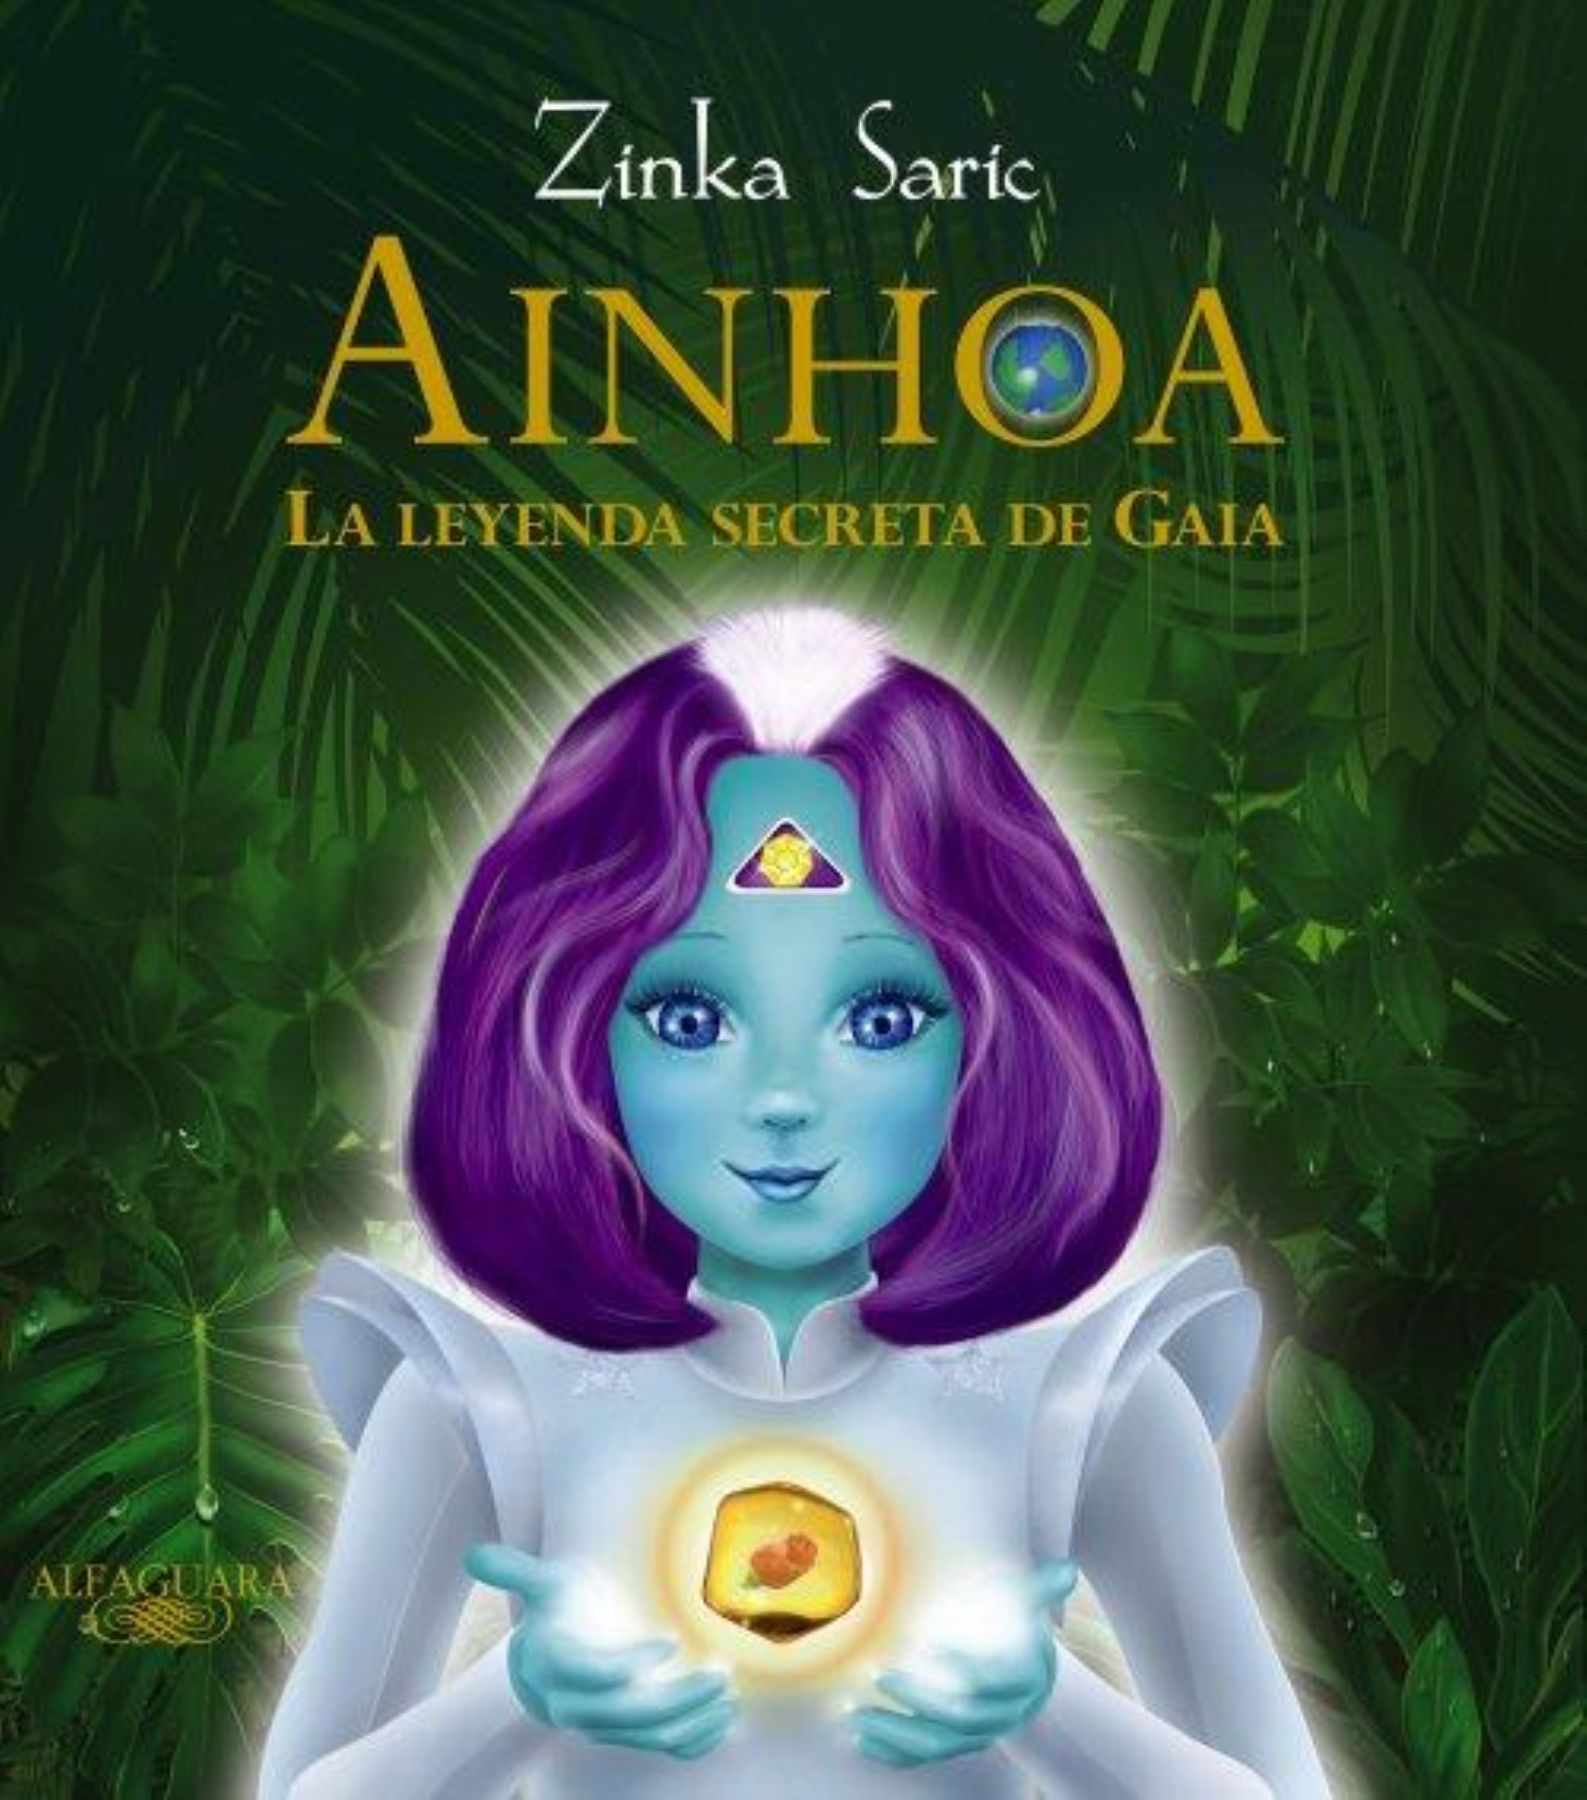 Portada del libro ‘Ainhoa, la leyenda secreta de Gaia’